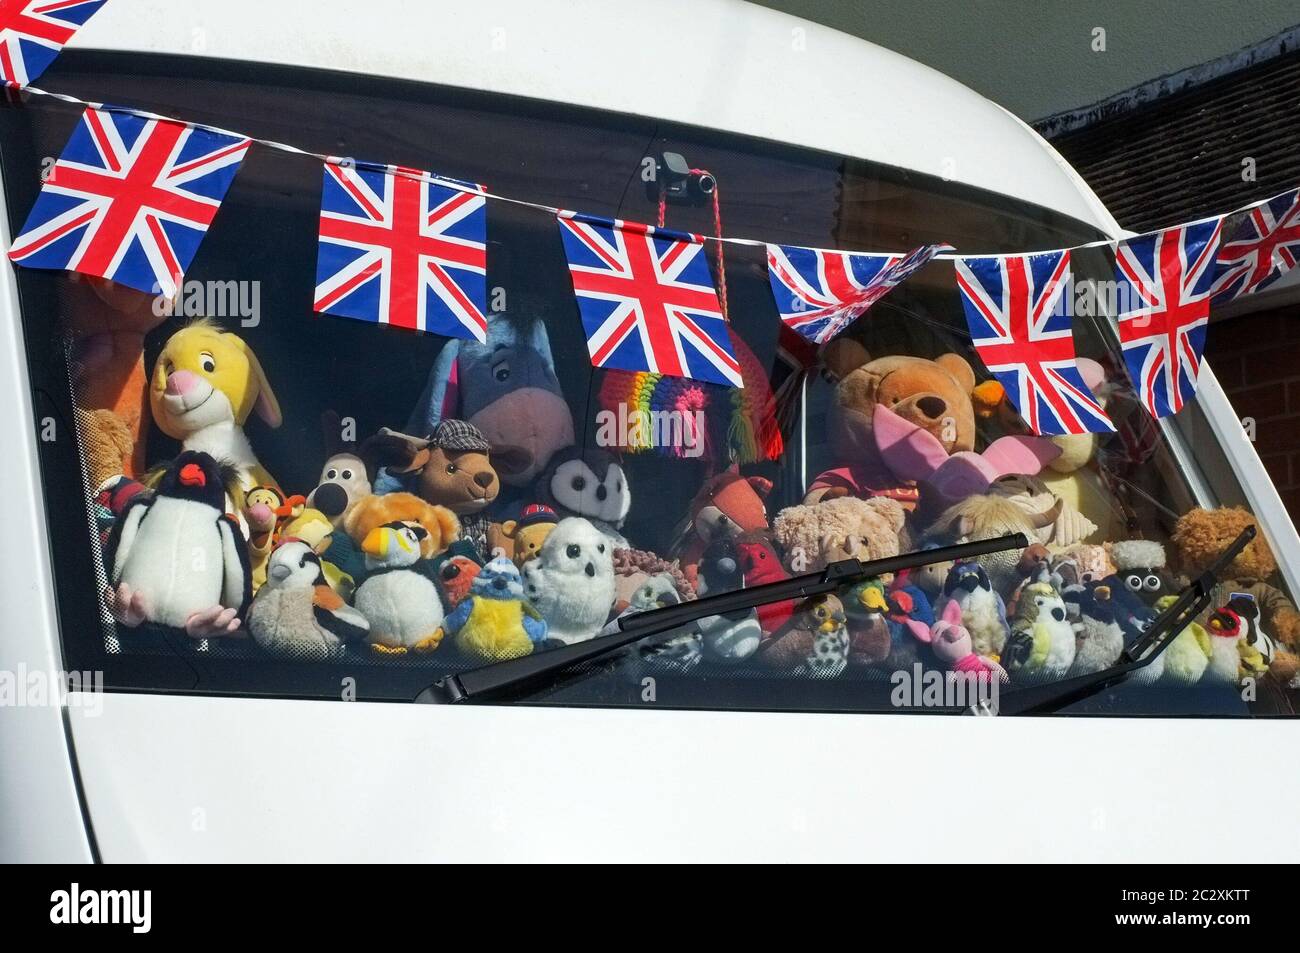 Stolz zeigt die UK Union Flag - EIN Camper van Armaturenbrett mit Stoffspielzeug bedeckt während der VE Tag 75. Feierlichkeiten im Mai 2020. Wilton Wiltshire Großbritannien. Stockfoto